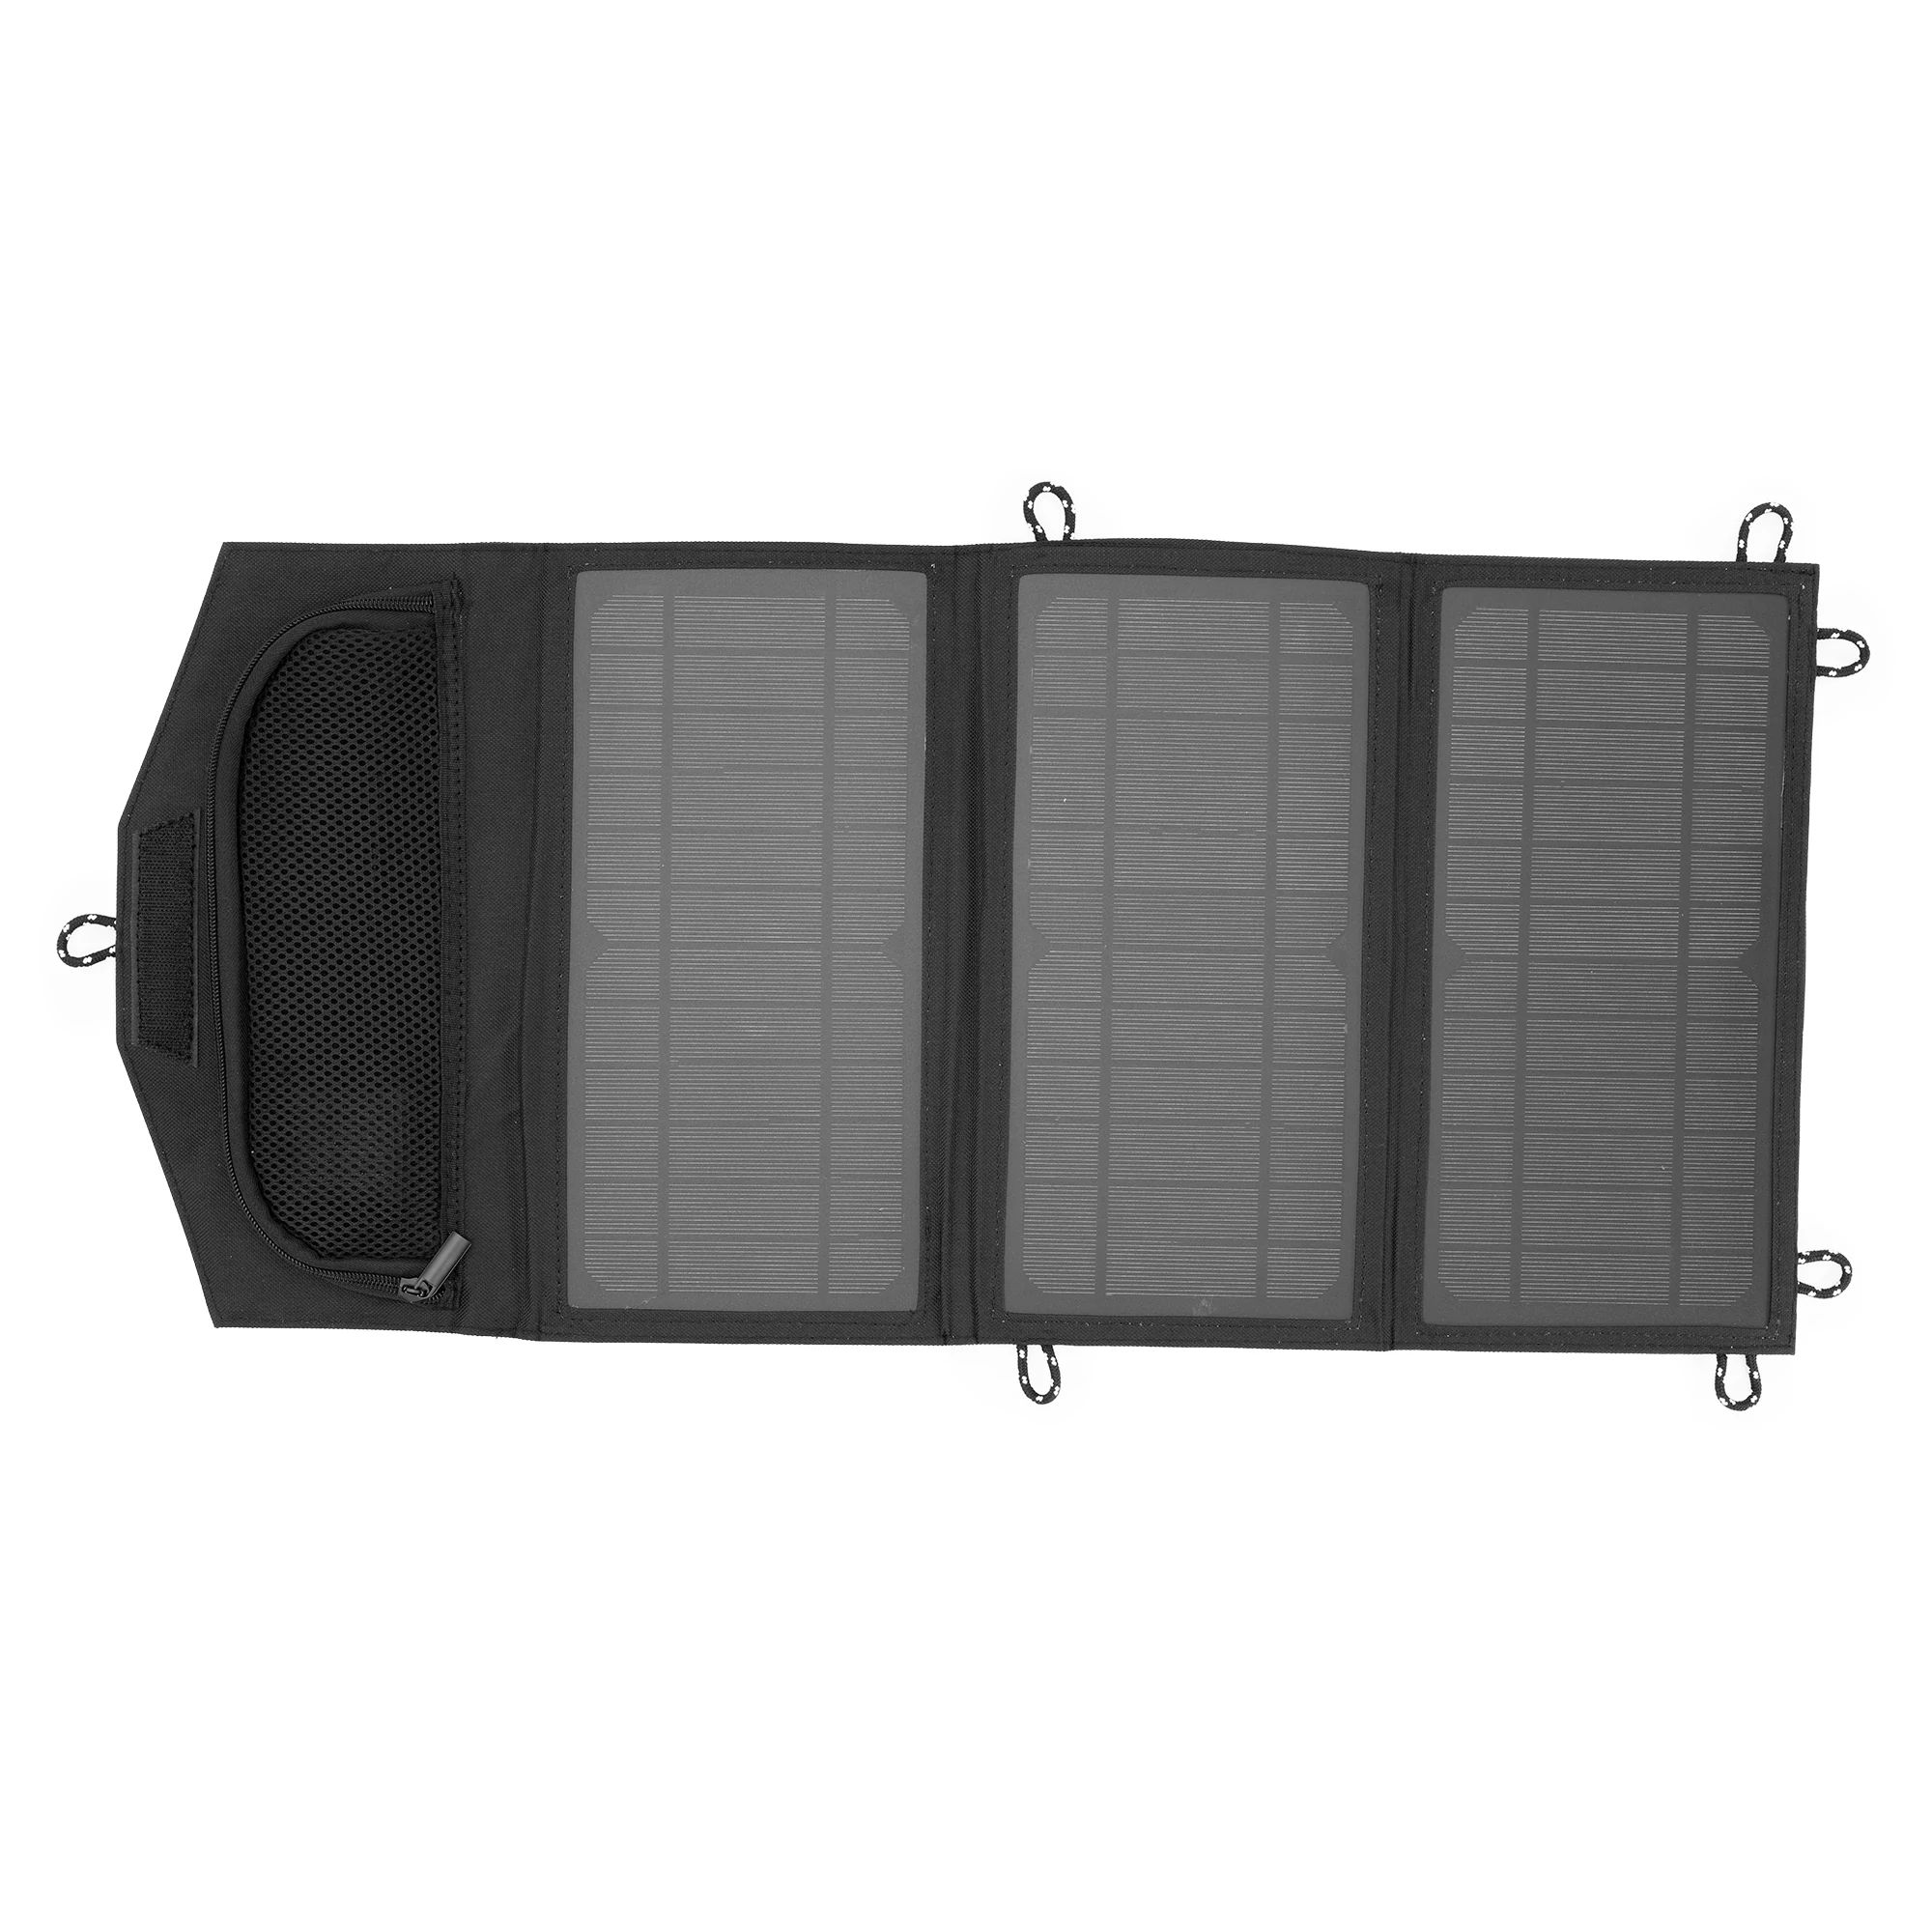 21-WATT FOLDABLE SOLAR PANEL - RYOBI Tools